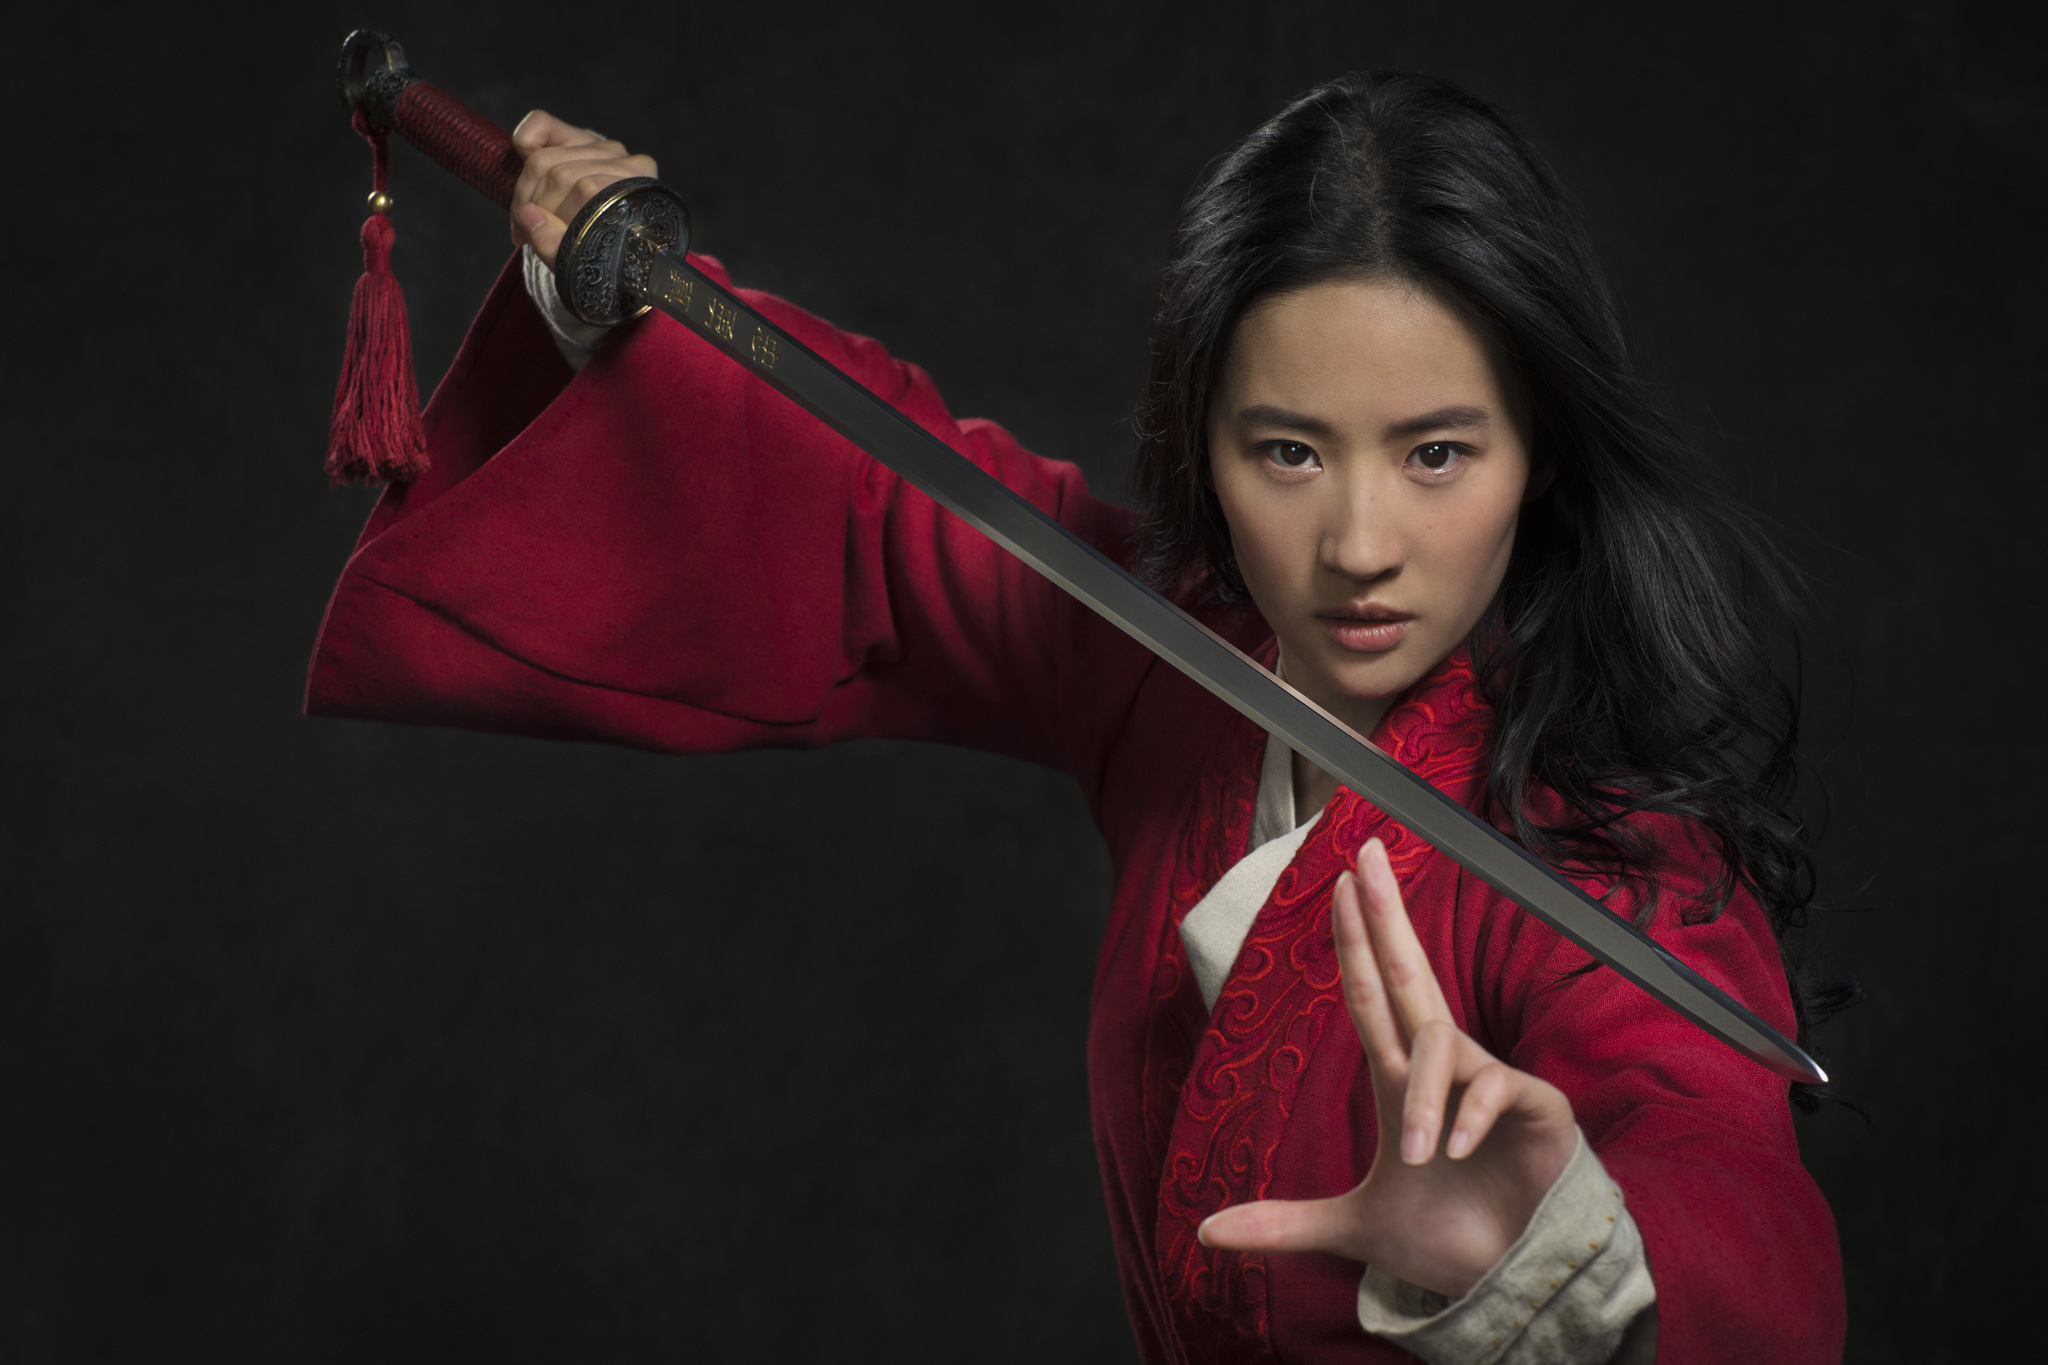 La actriz Liu Yifei es la elegida para interpretar a la intrépida guerrera. (Foto Prensa Libre: Disney)